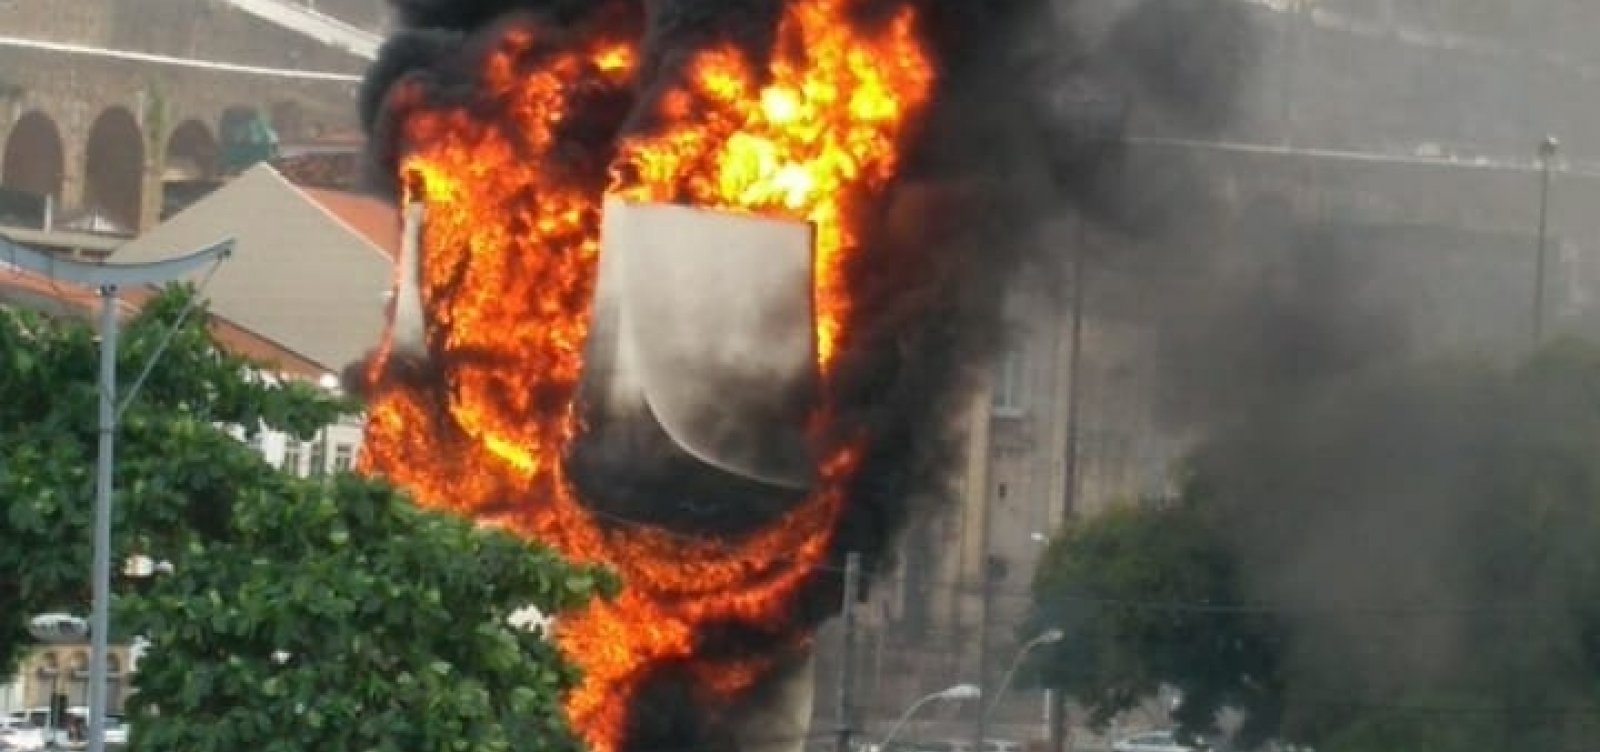 Monumento à Cidade de Salvador fica completamente destruído após incêndio